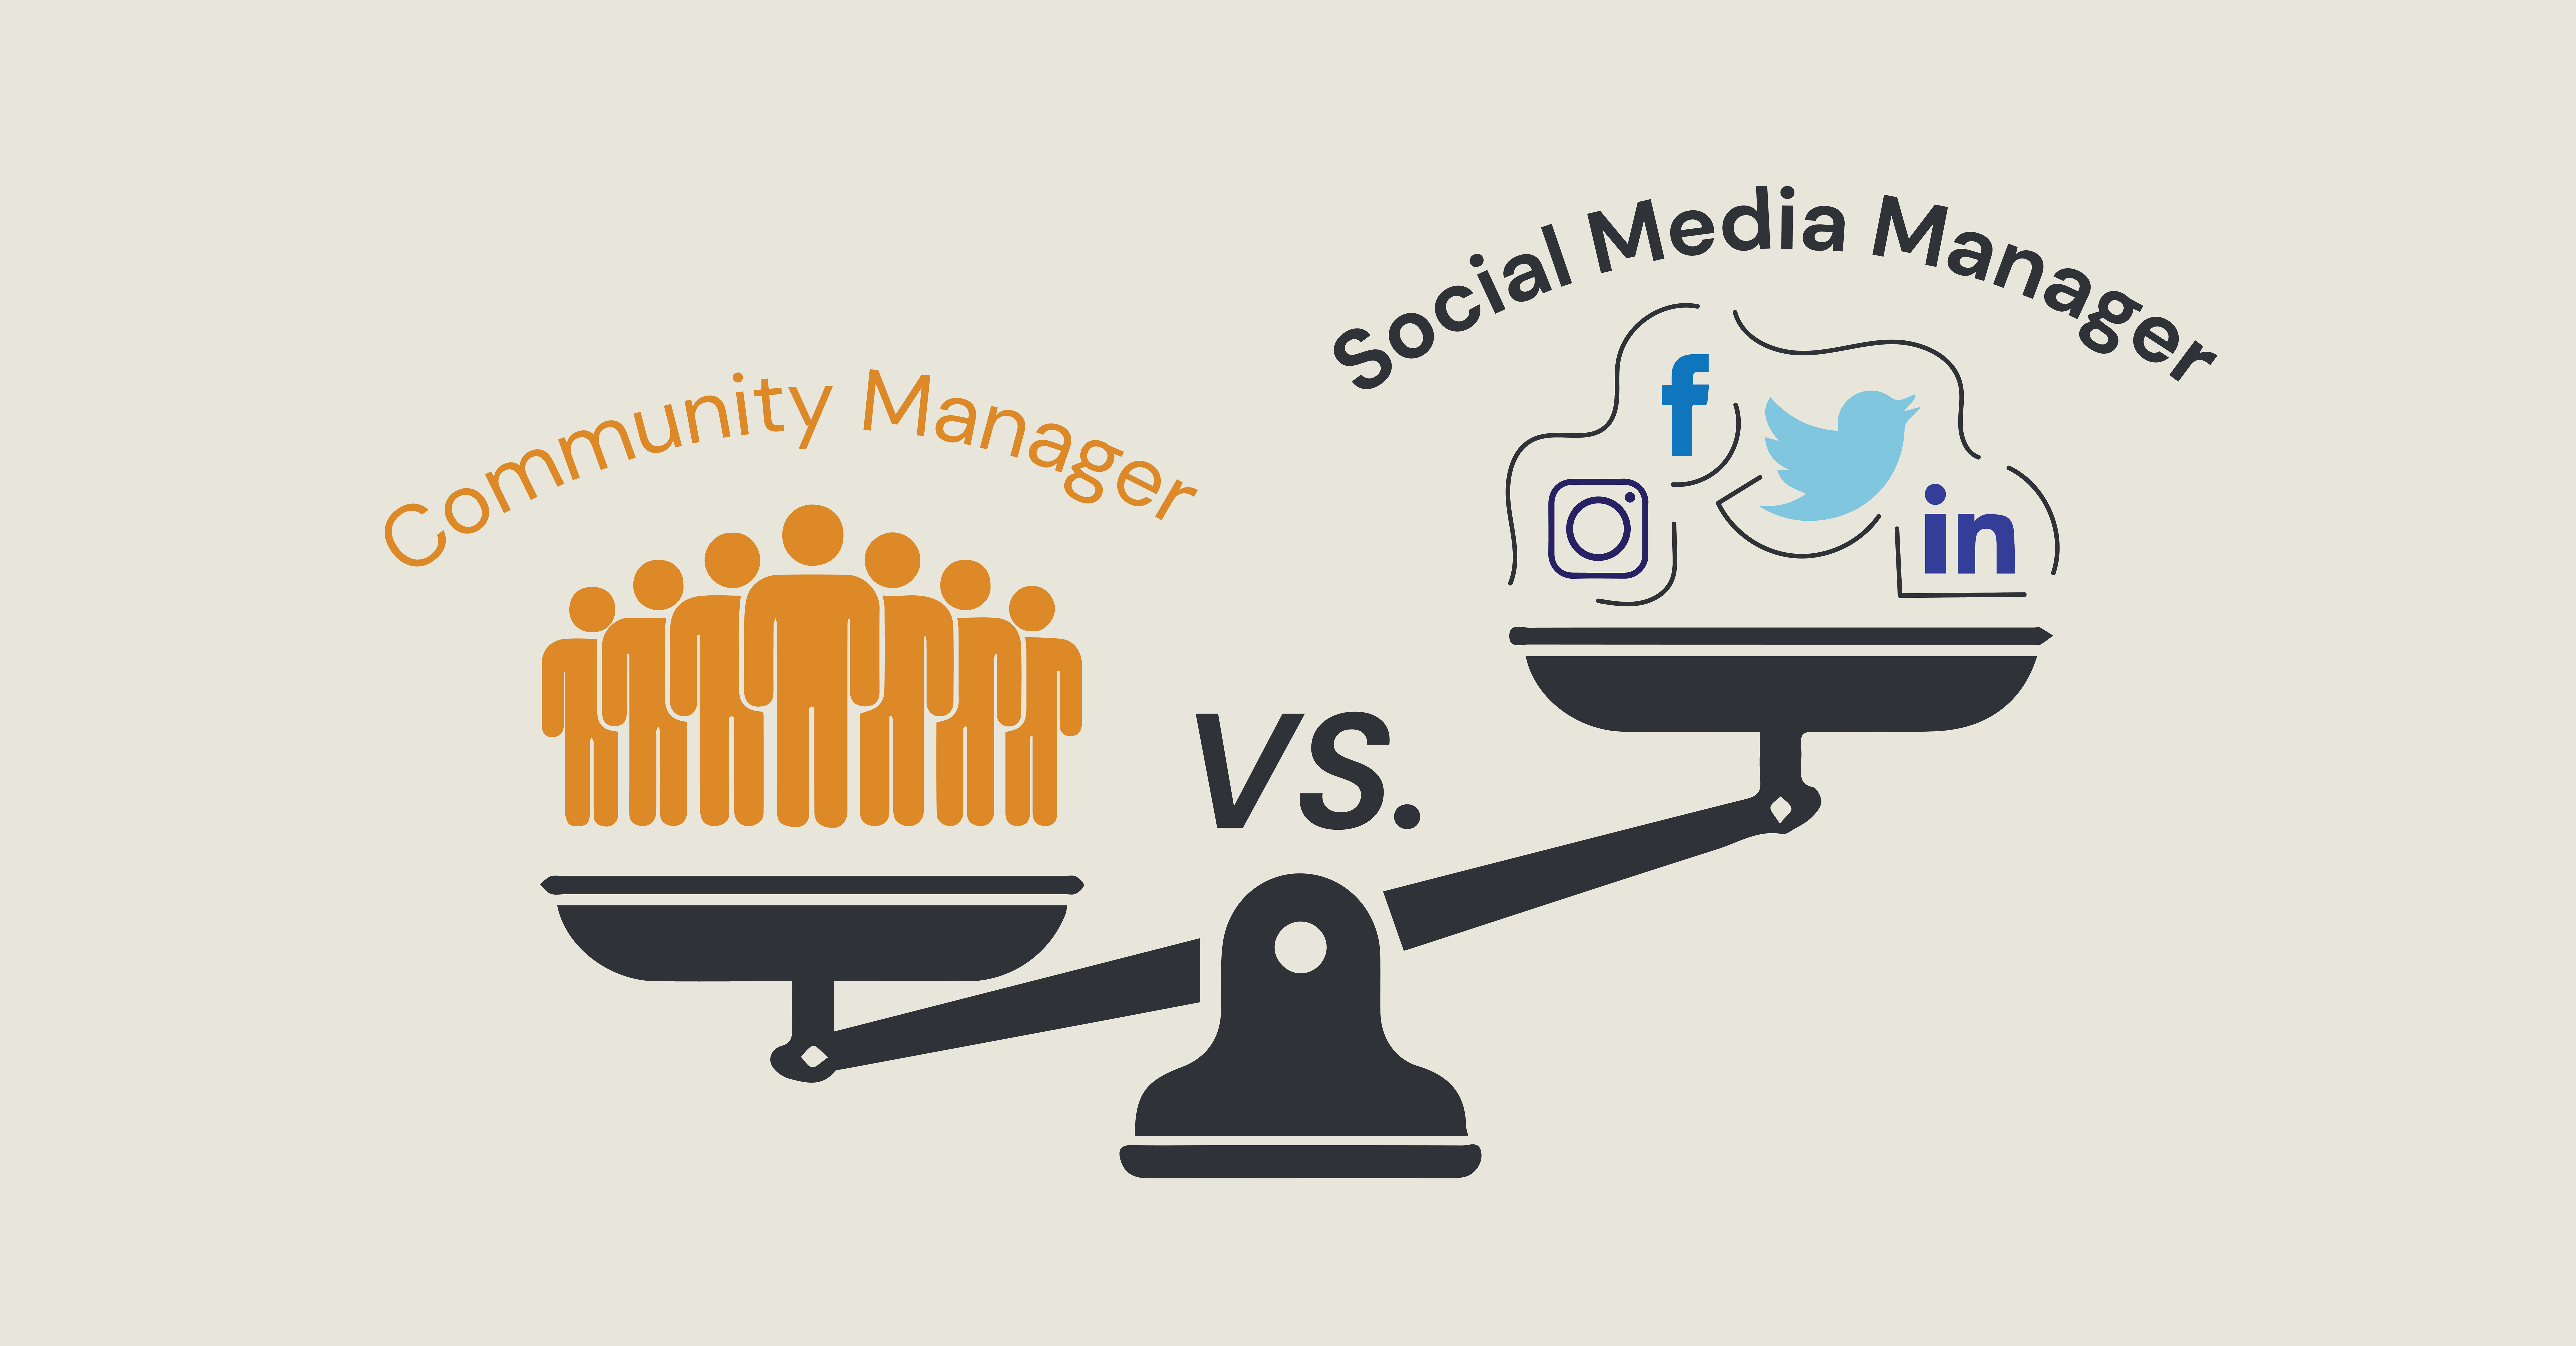 LinkDaddy Social Media Management